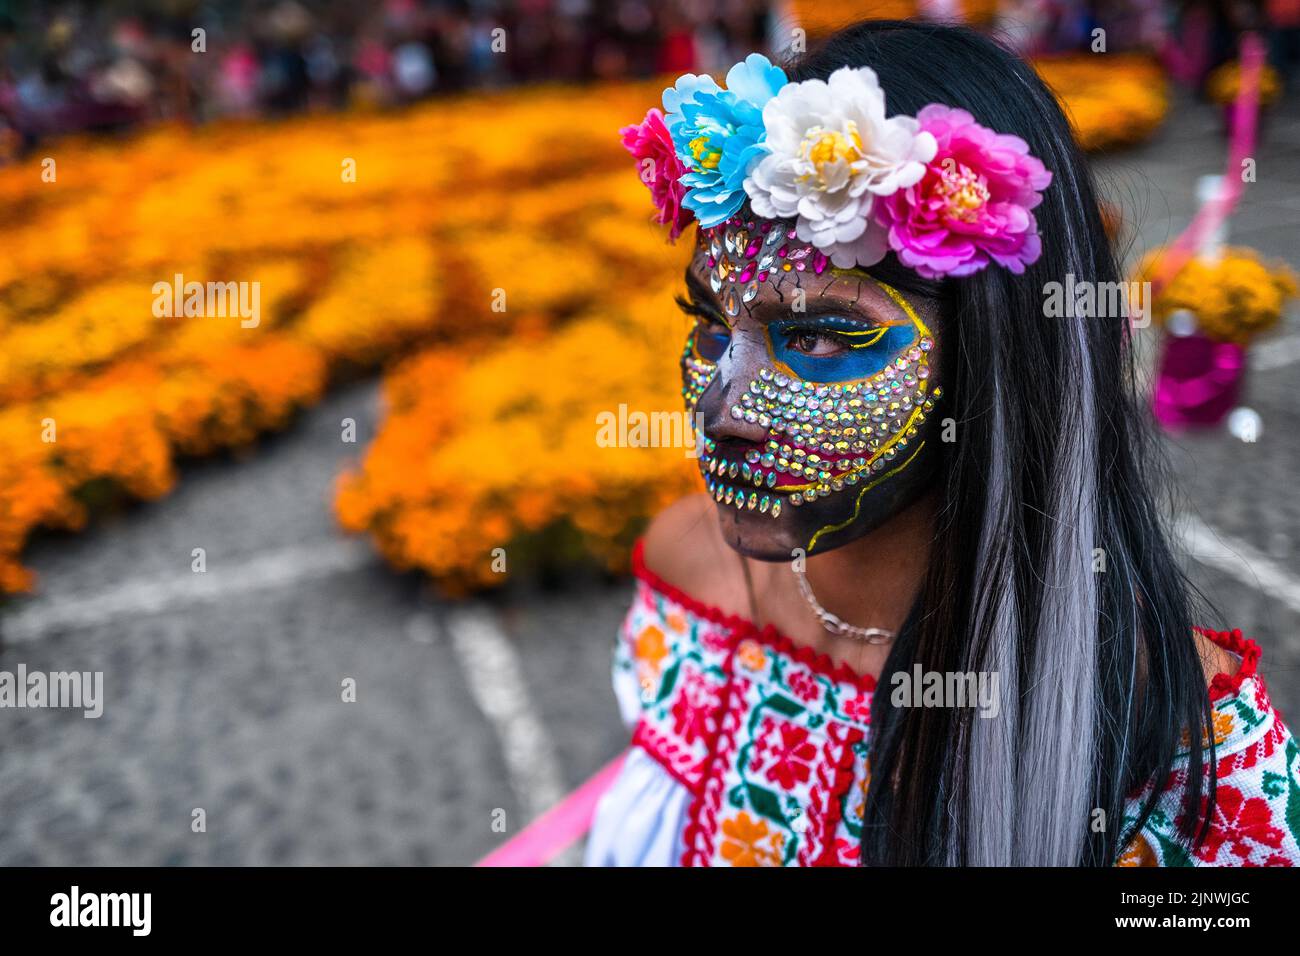 Una ragazza messicana, vestita come la Catrina e vestita con le gemme del viso, partecipa alle celebrazioni del giorno dei morti a Taxco de Alarcón, Messico. Foto Stock